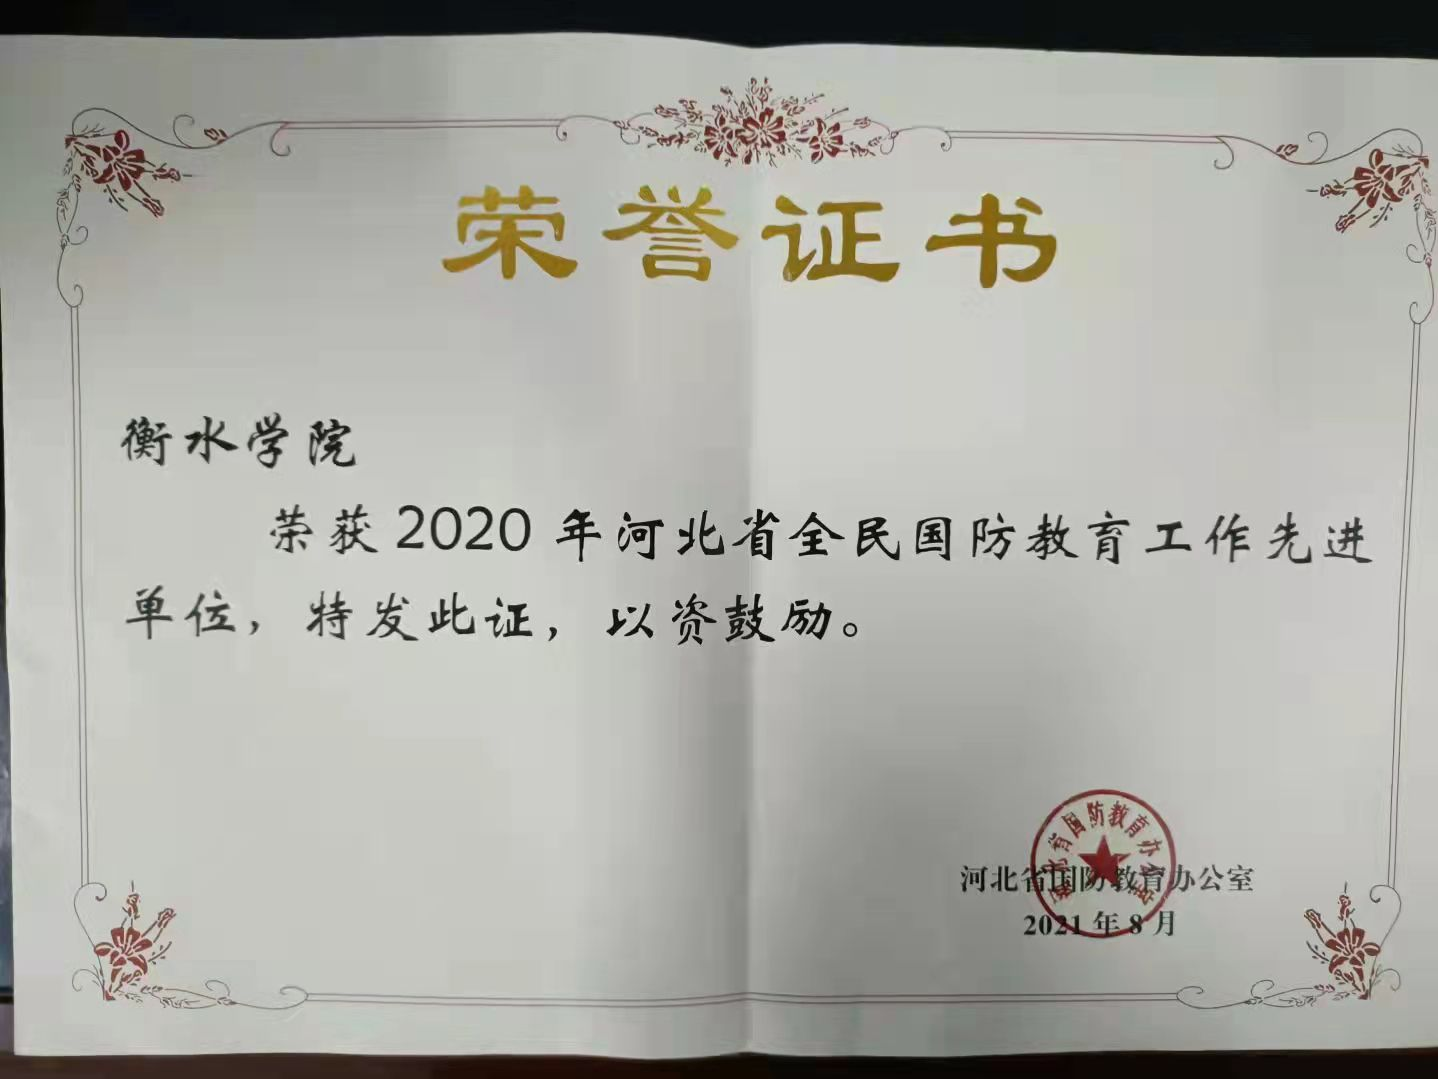 衡水学院荣获河北省全民国防教育工作2020年度先进单位荣誉称号